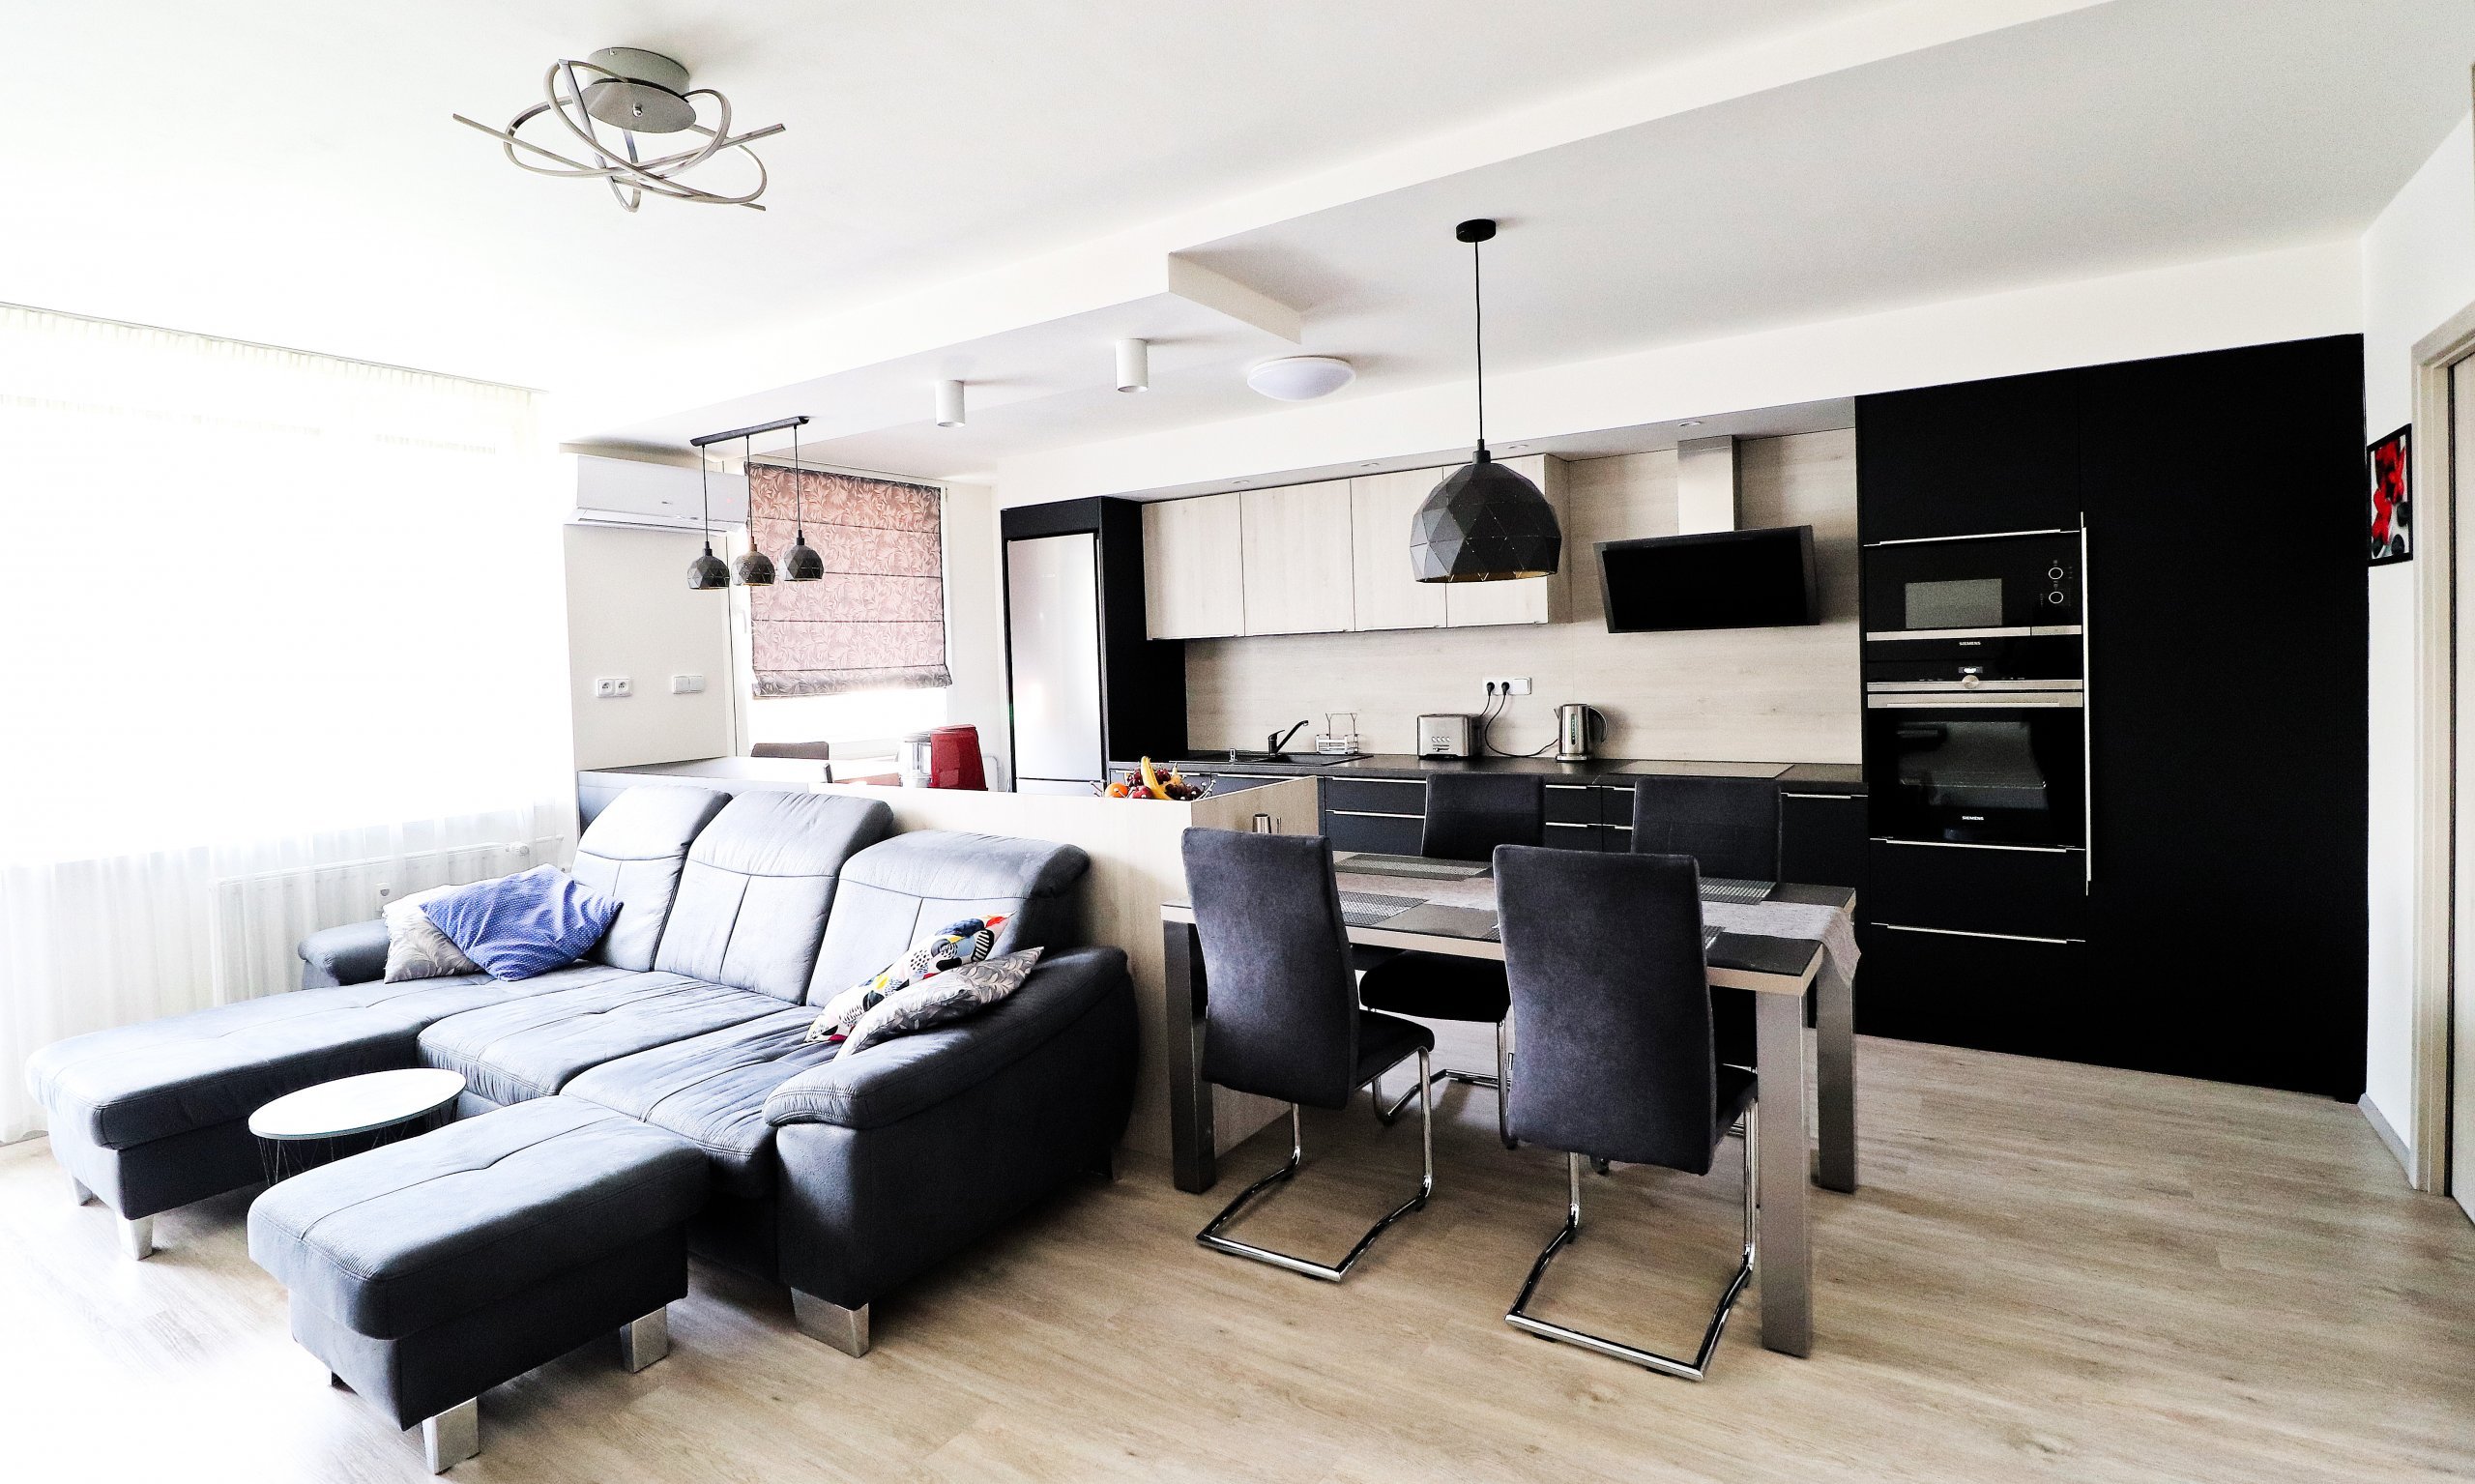 Obývací pokoj spojený s kuchyňskou linkou je hlavním prostorem většiny bytů.

V&nbsp;tomto nově zrekonstruovaném bytě jsme pro mladou rodinu vytvořili místo…